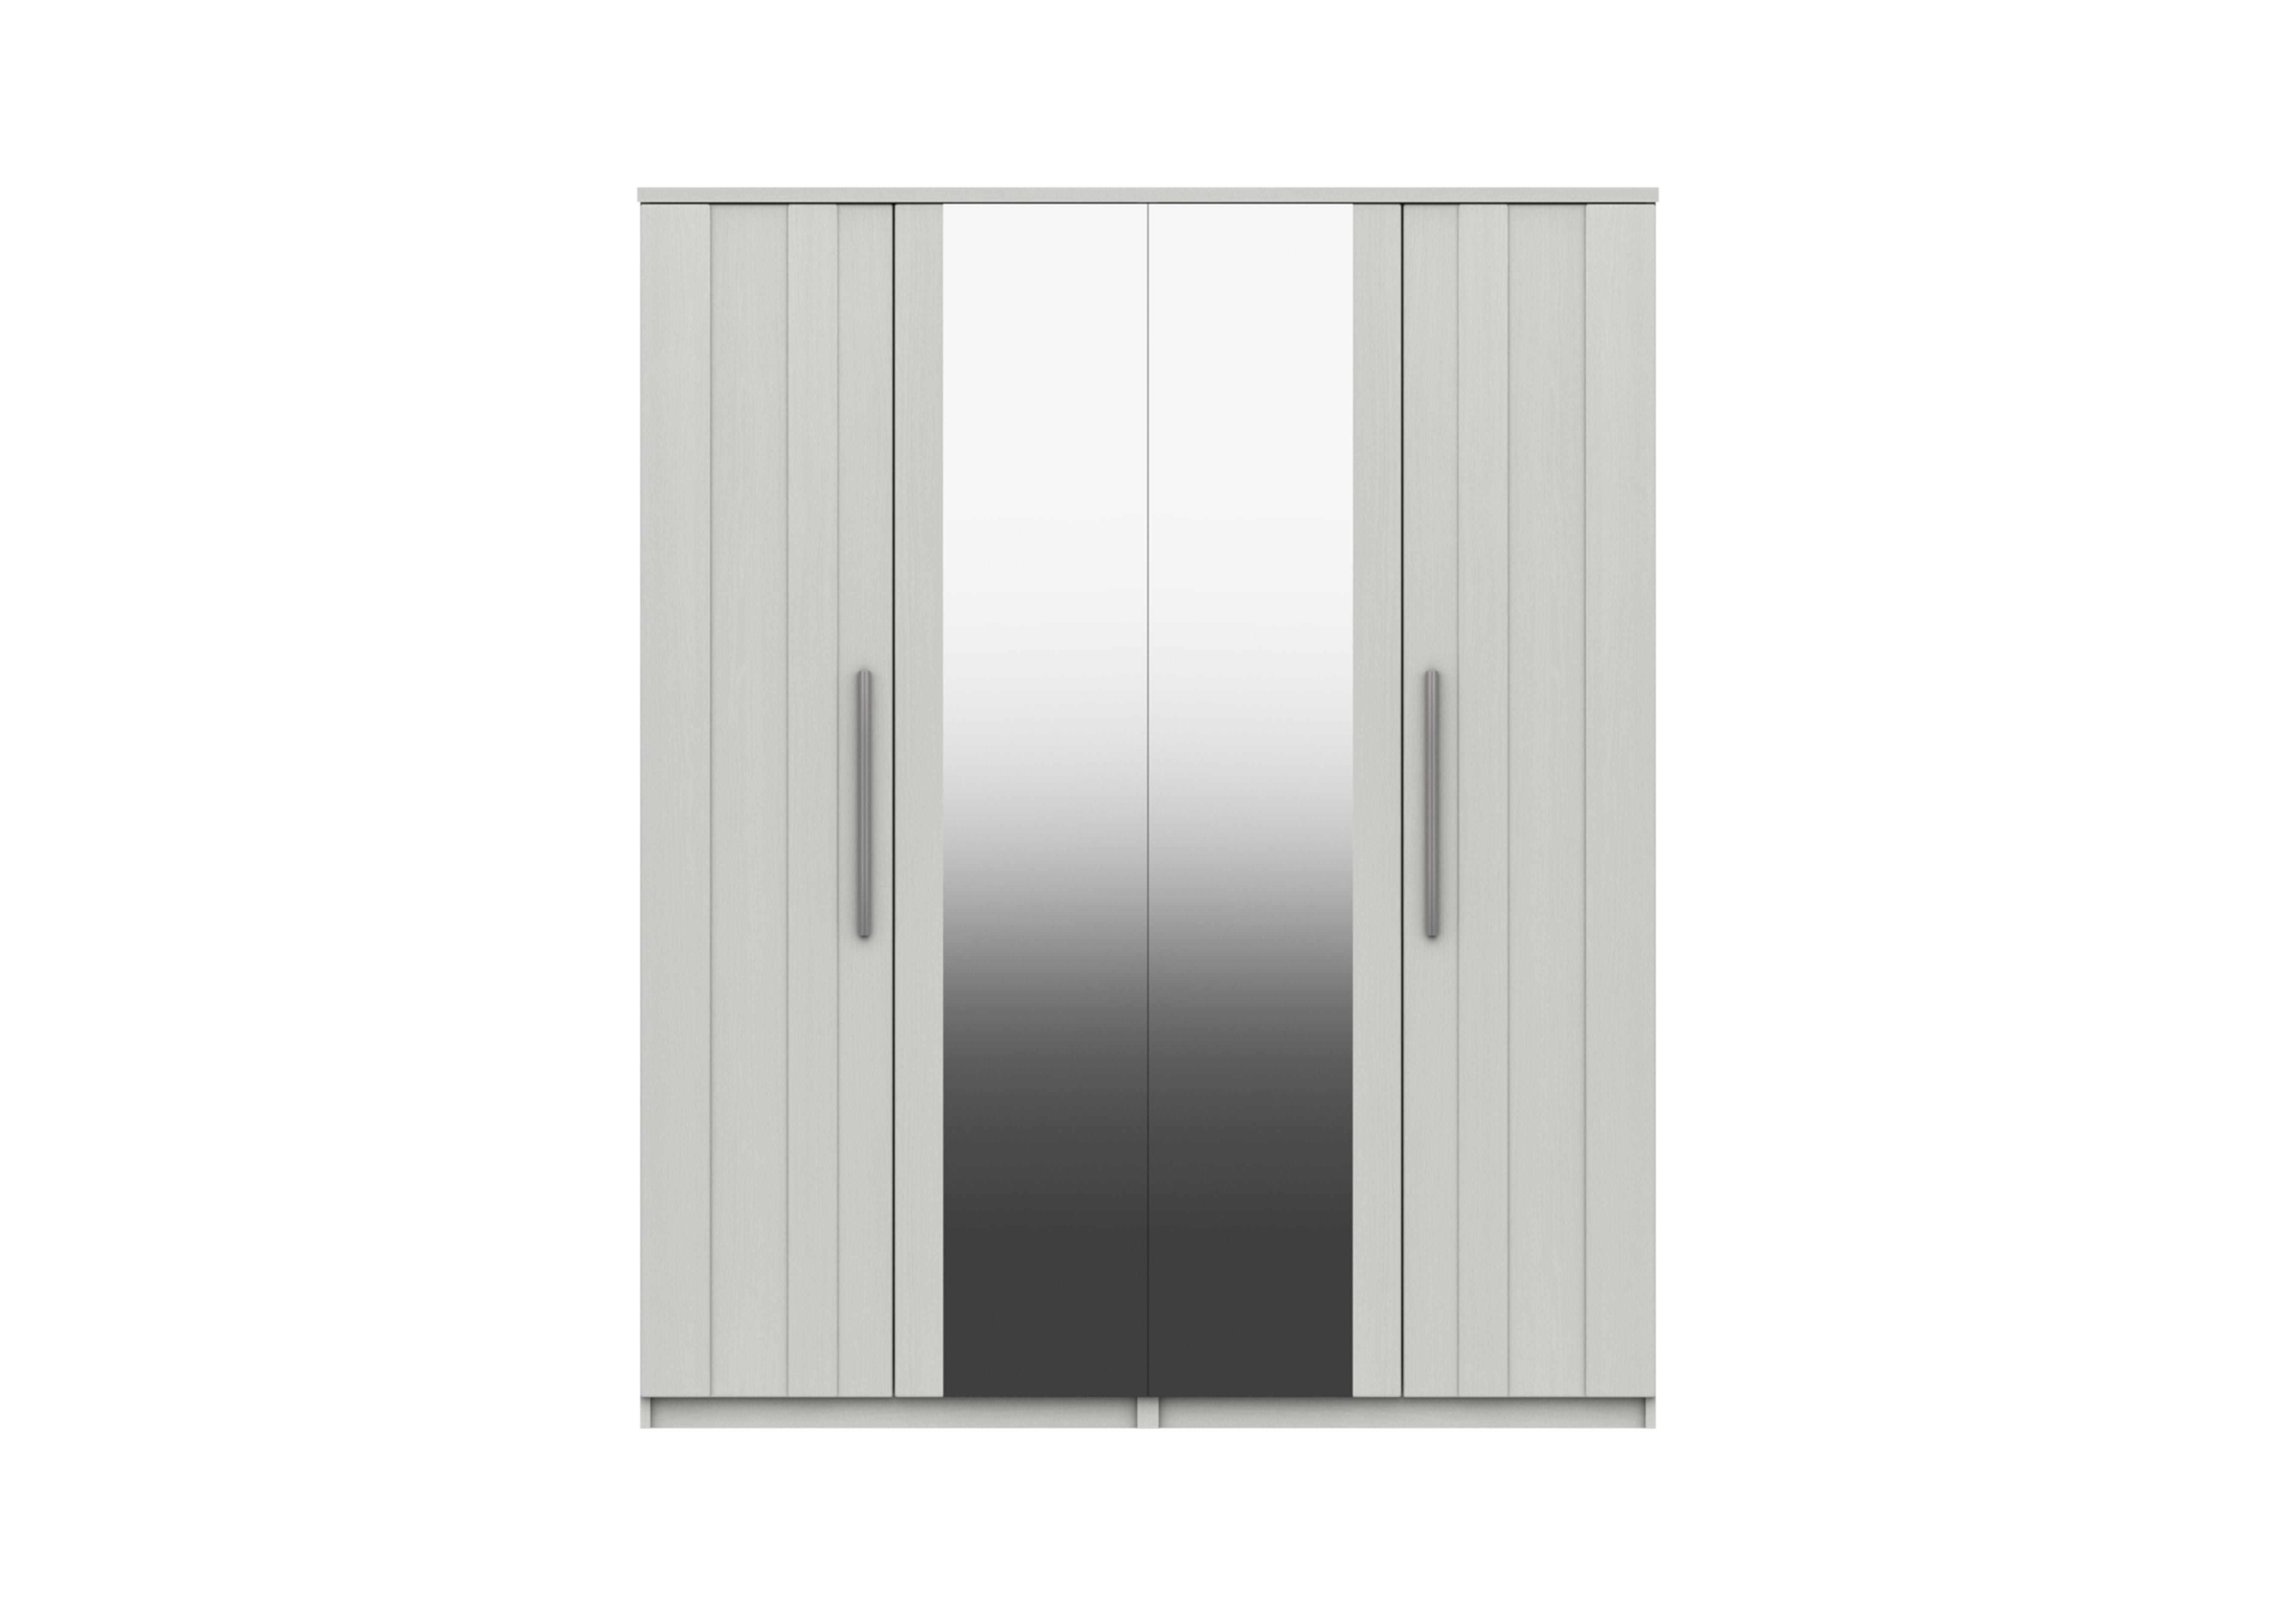 Victoria 4 Door Wardrobe with 2 Mirrors in White on Furniture Village